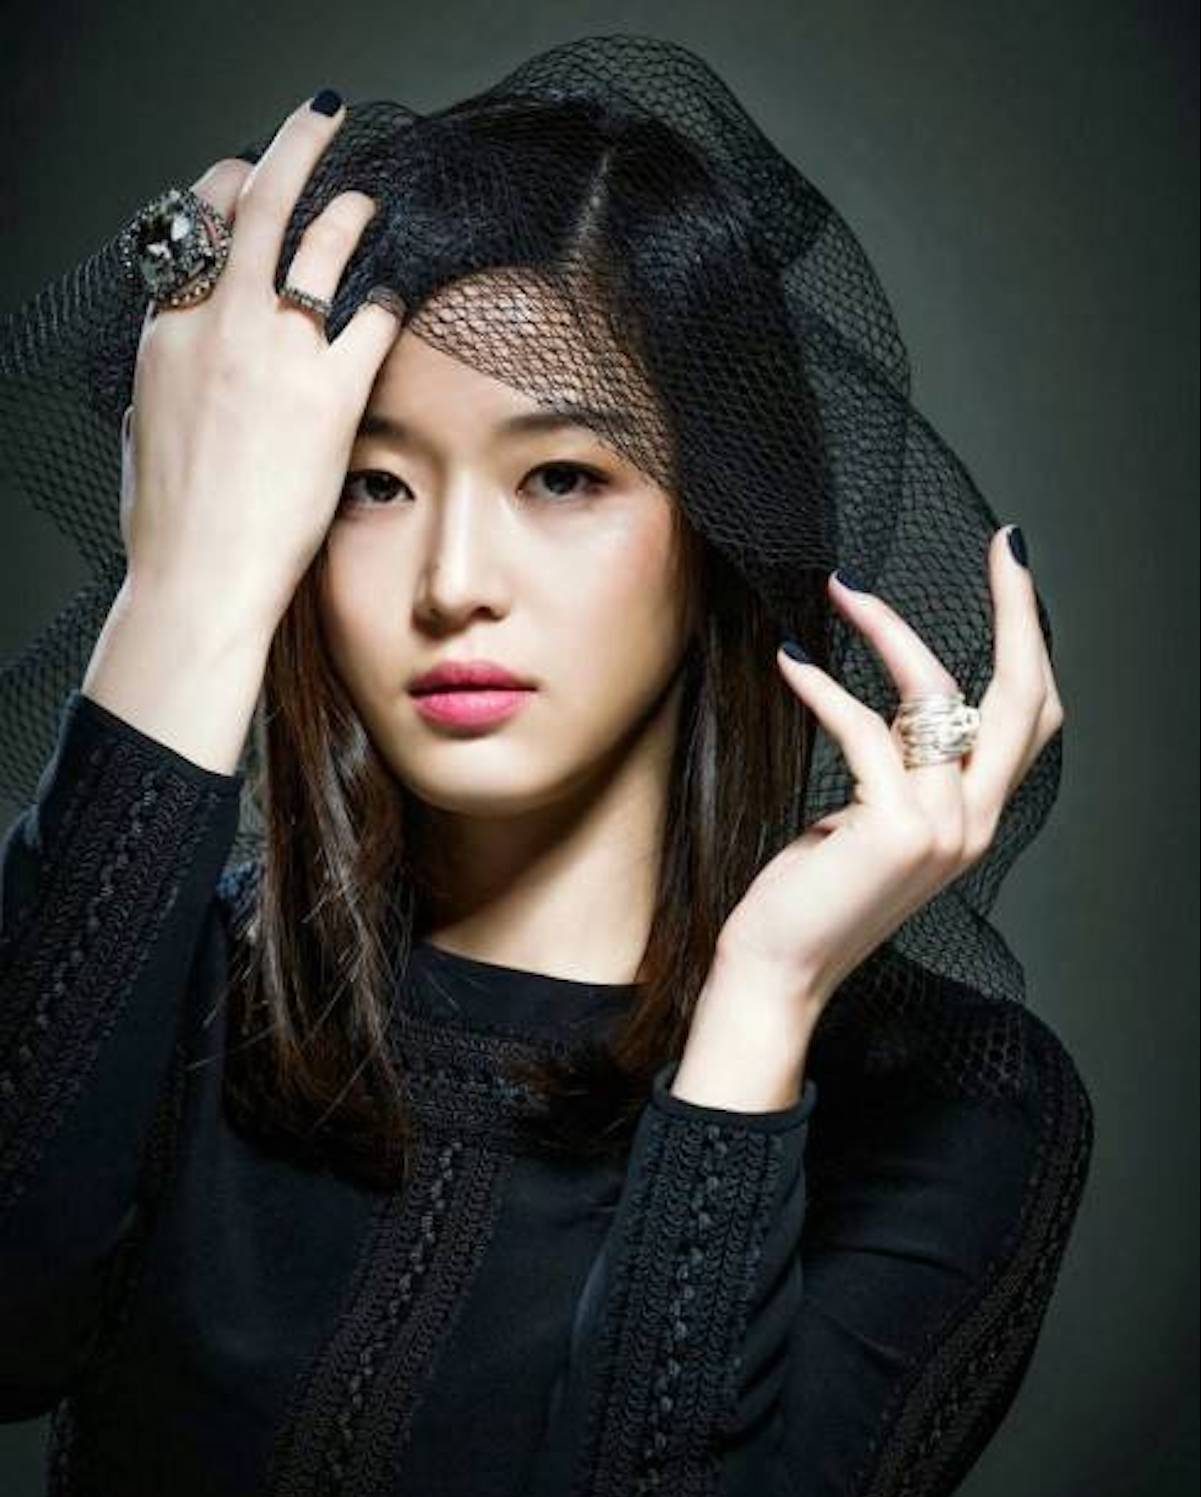 زیباترین مدل های زن کره ای